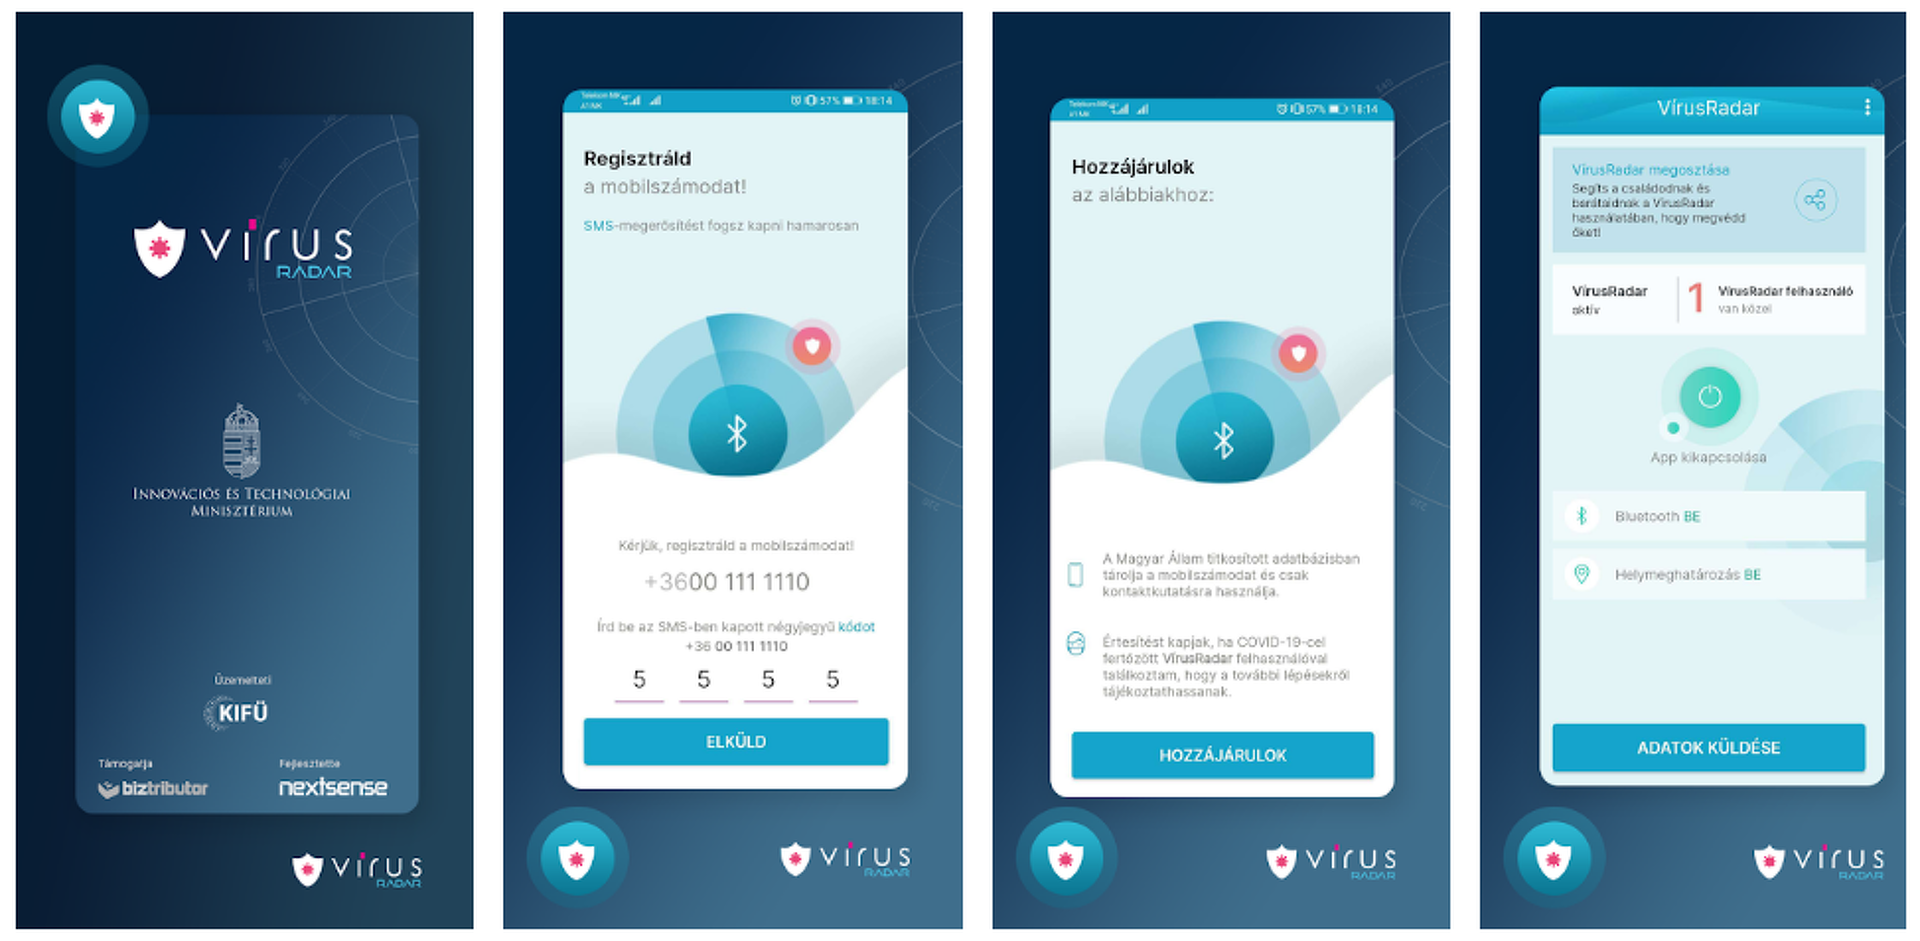 VírusRadar - már letölthető a vírusfertőzöttet jelző mobil applikáció